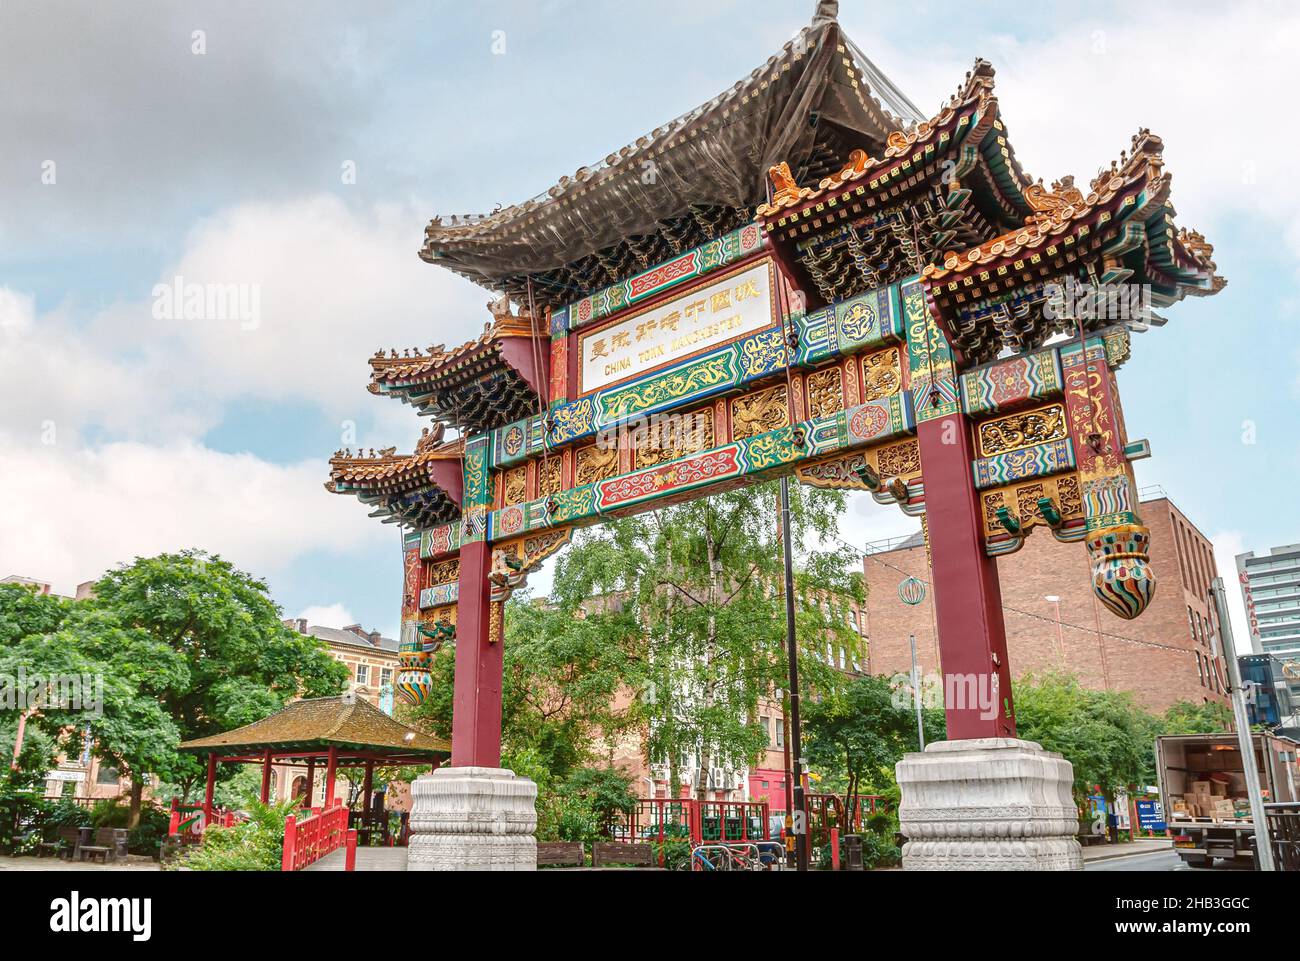 El Archway en Manchester Chinatown, Inglaterra, Reino Unido Foto de stock